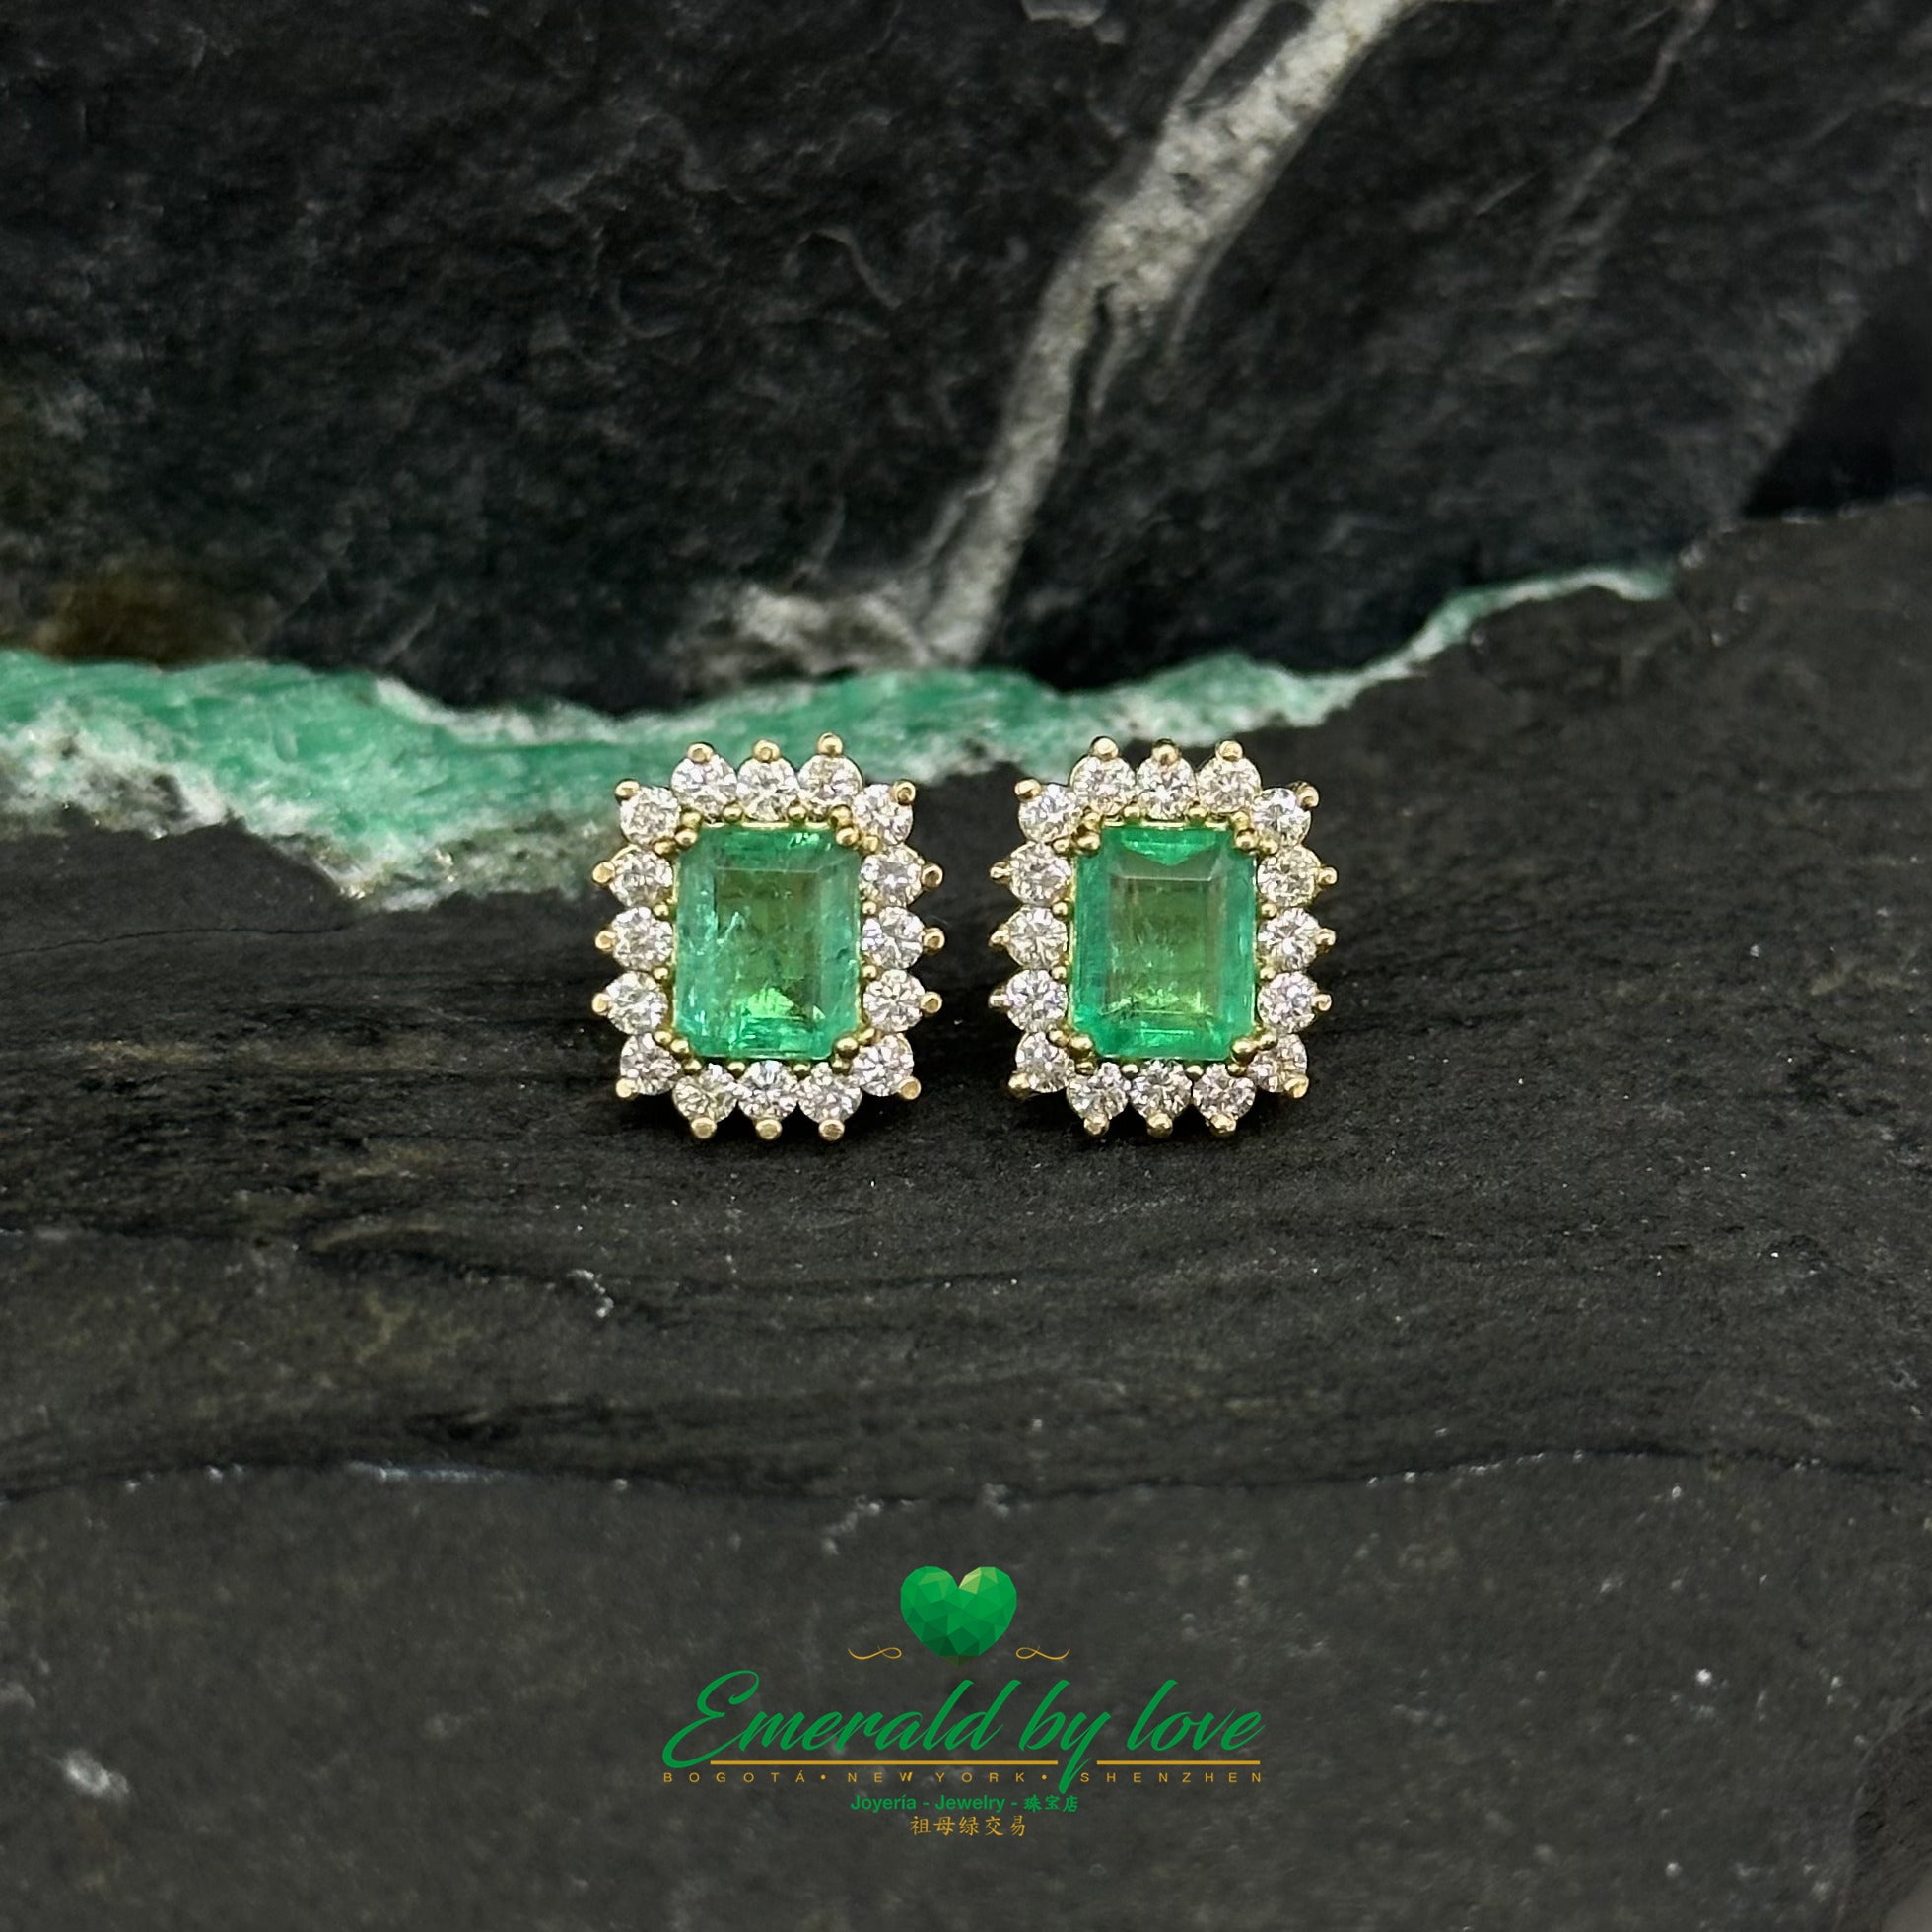 Aretes de Esmeralda colombiana talla marquesa y diamantes: Exquisitos cristales rectangulares